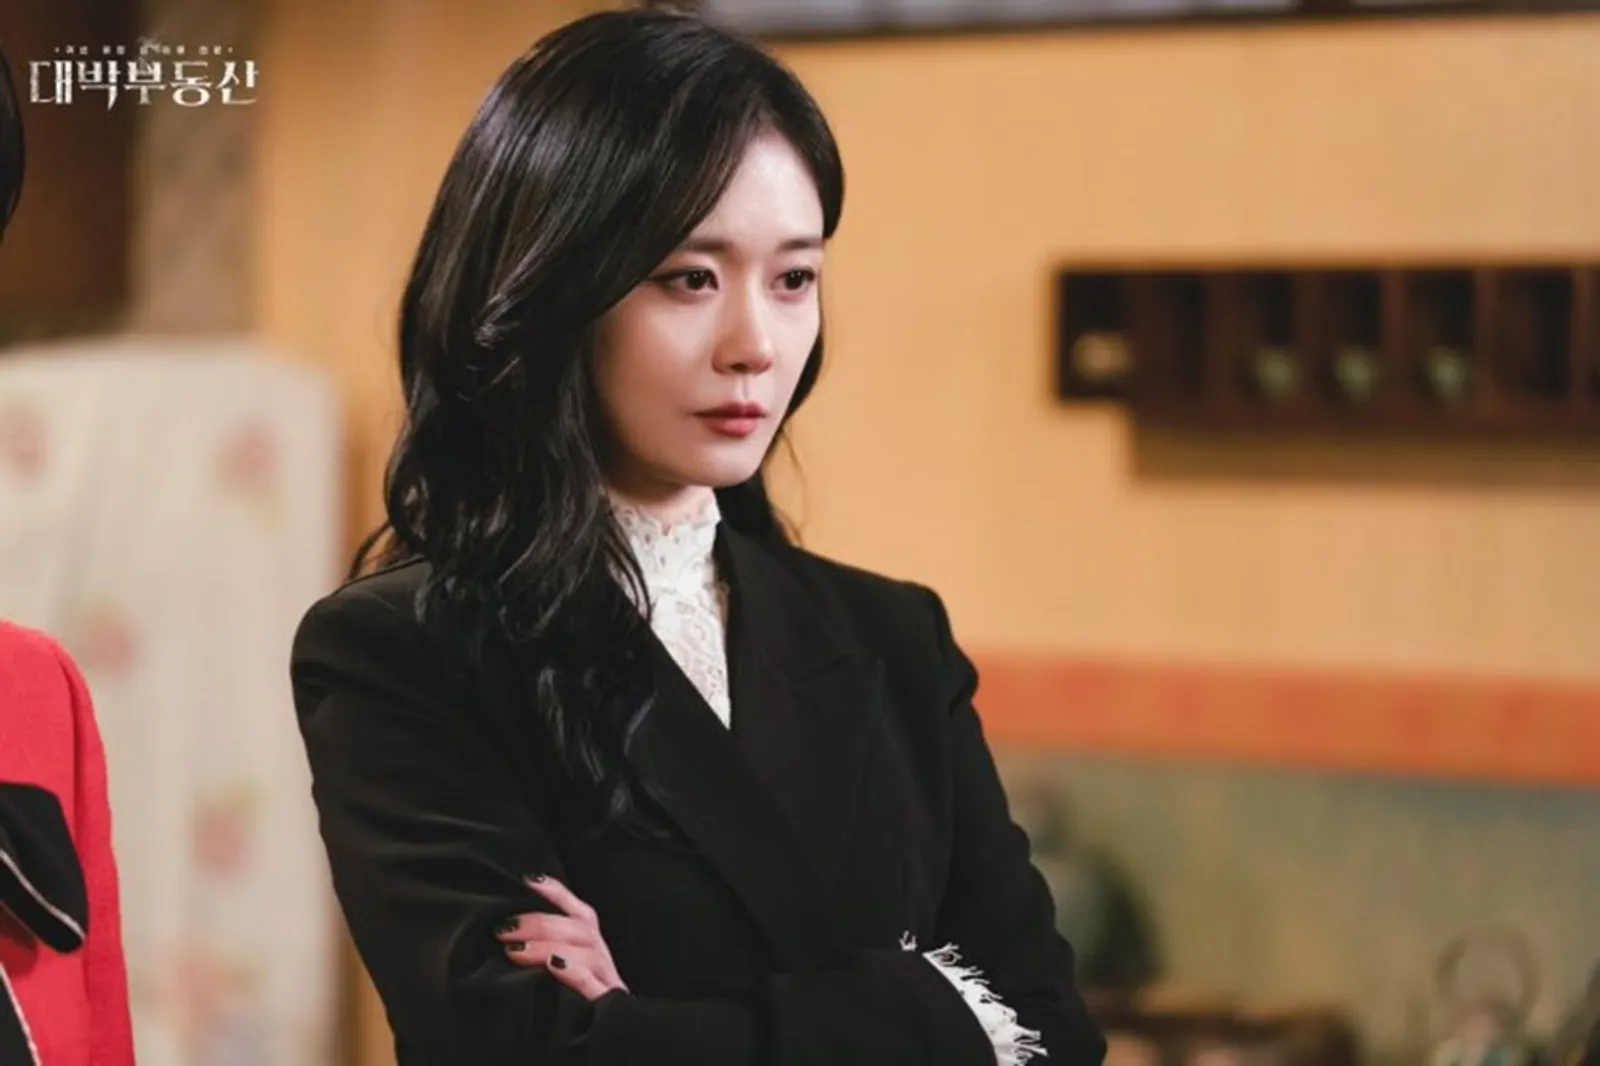 Tayang April 2021, Deretan Drama Korea Ini Mengusung Tema Misteri